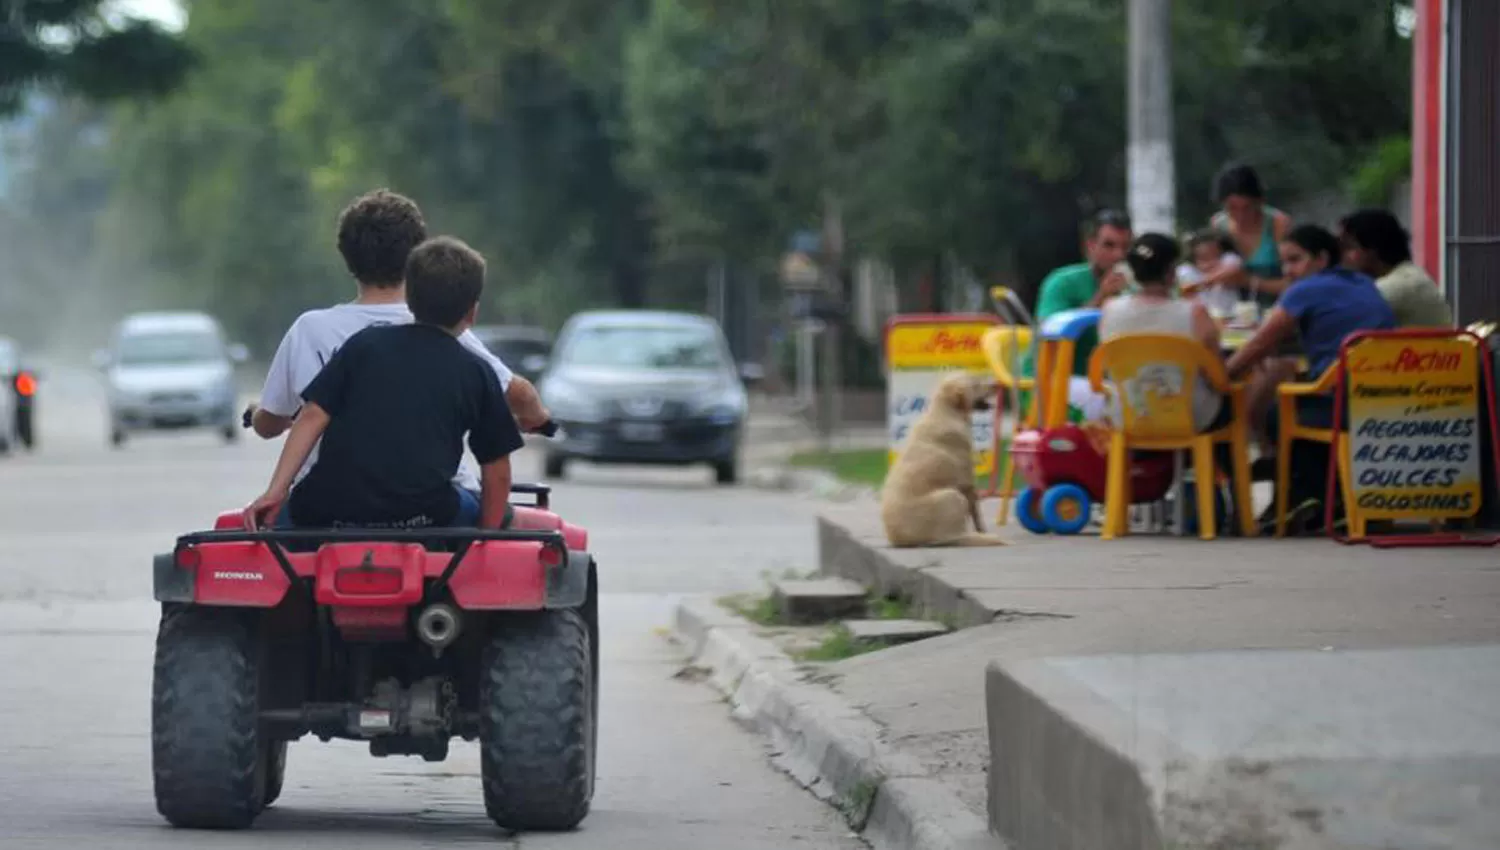 CUATRICICLOS. Dos chicos circulan en uno de estos vehículos por una calle tucumana. ARCHIVO